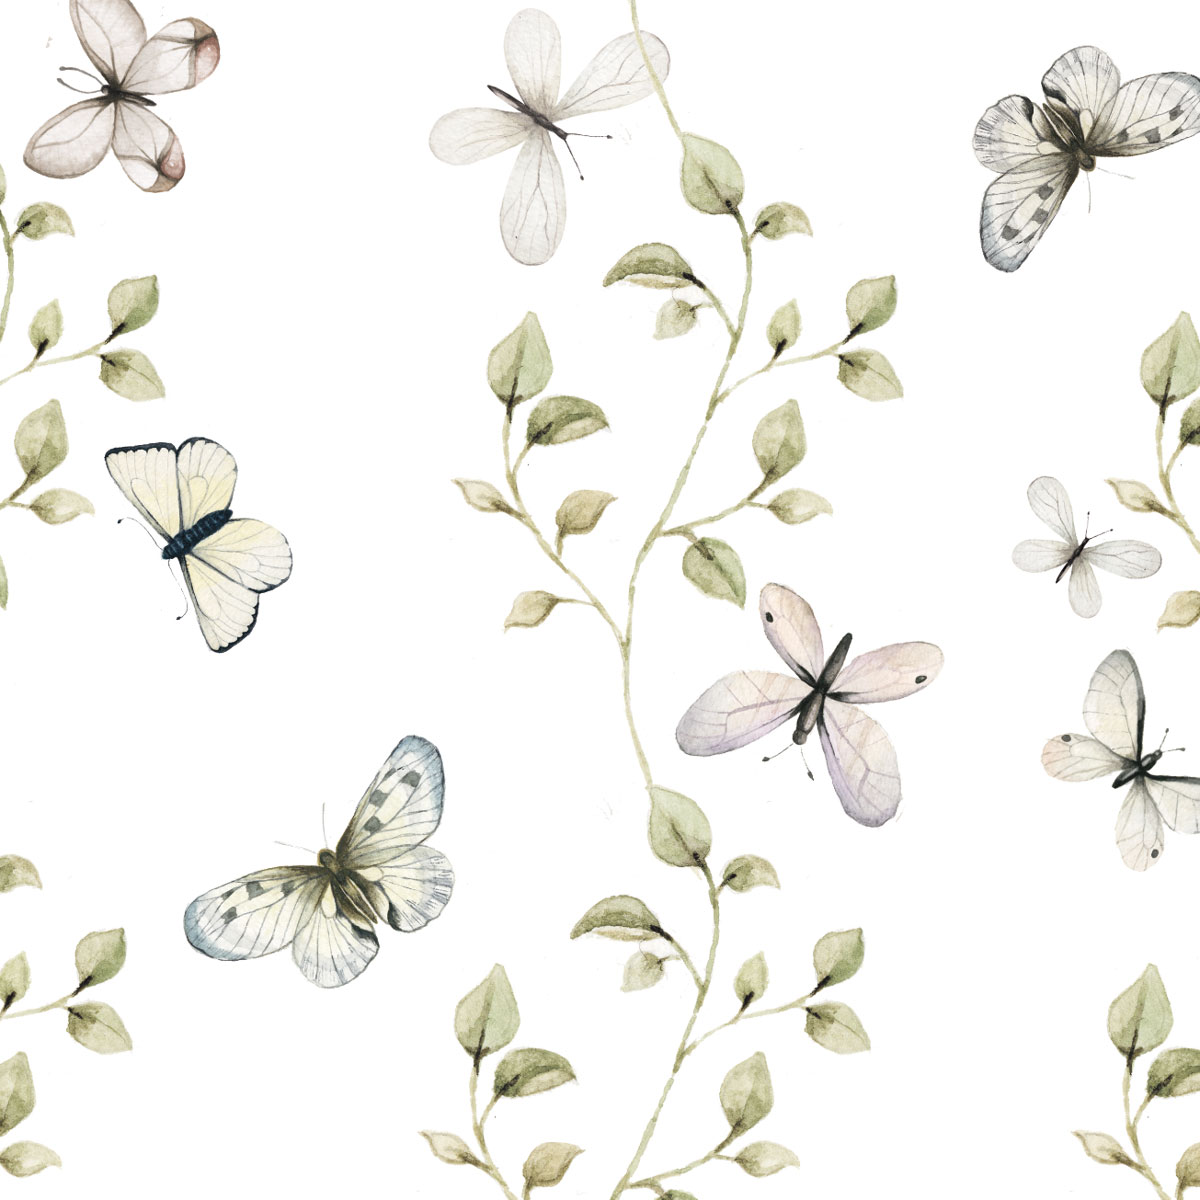 Butterflies Having Fun Wallpaper.com Wallstickers And Wallpaper Online Store